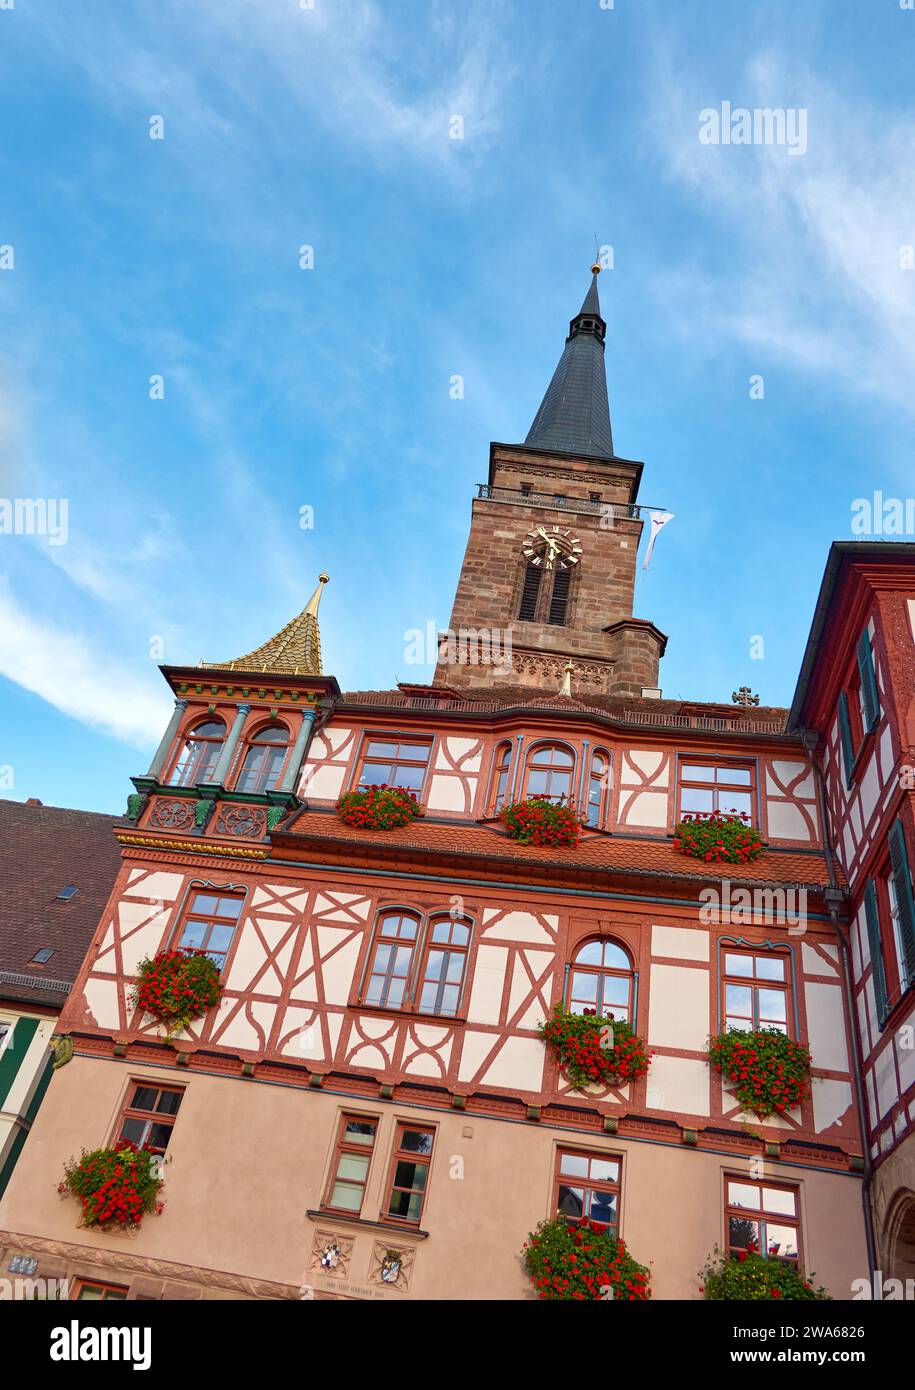 Storico municipio con tetto dorato sulla torre angolare, città di Schwabach, Germania Foto Stock